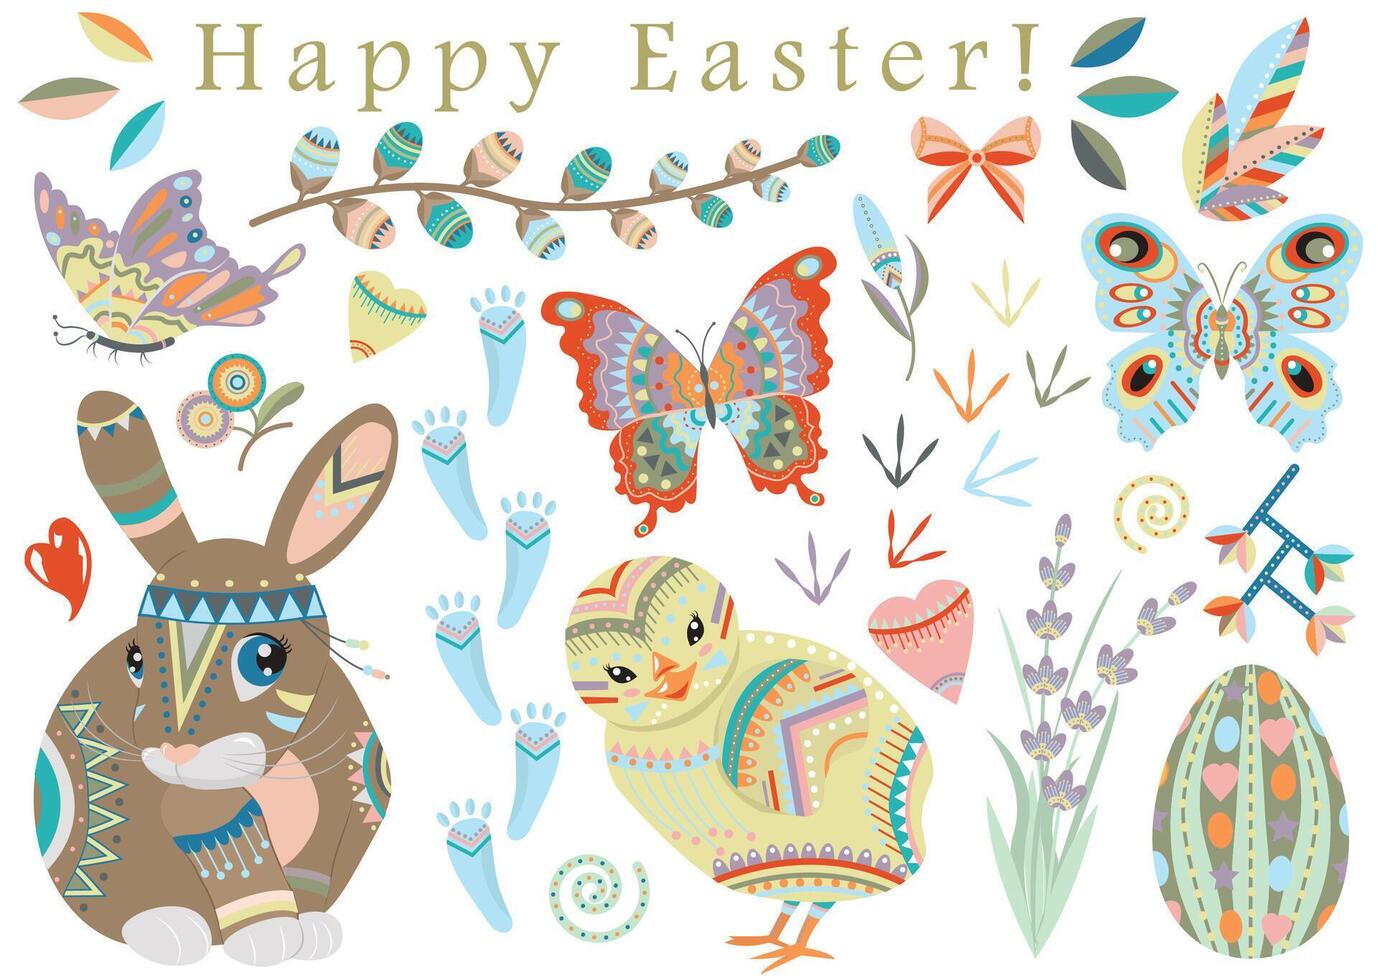 mano dibujado colección con contento Pascua de Resurrección fiesta tradicional símbolos y objetos - conejo, huevo, flores, decoraciones en plano laico estilo aislado en blanco vector